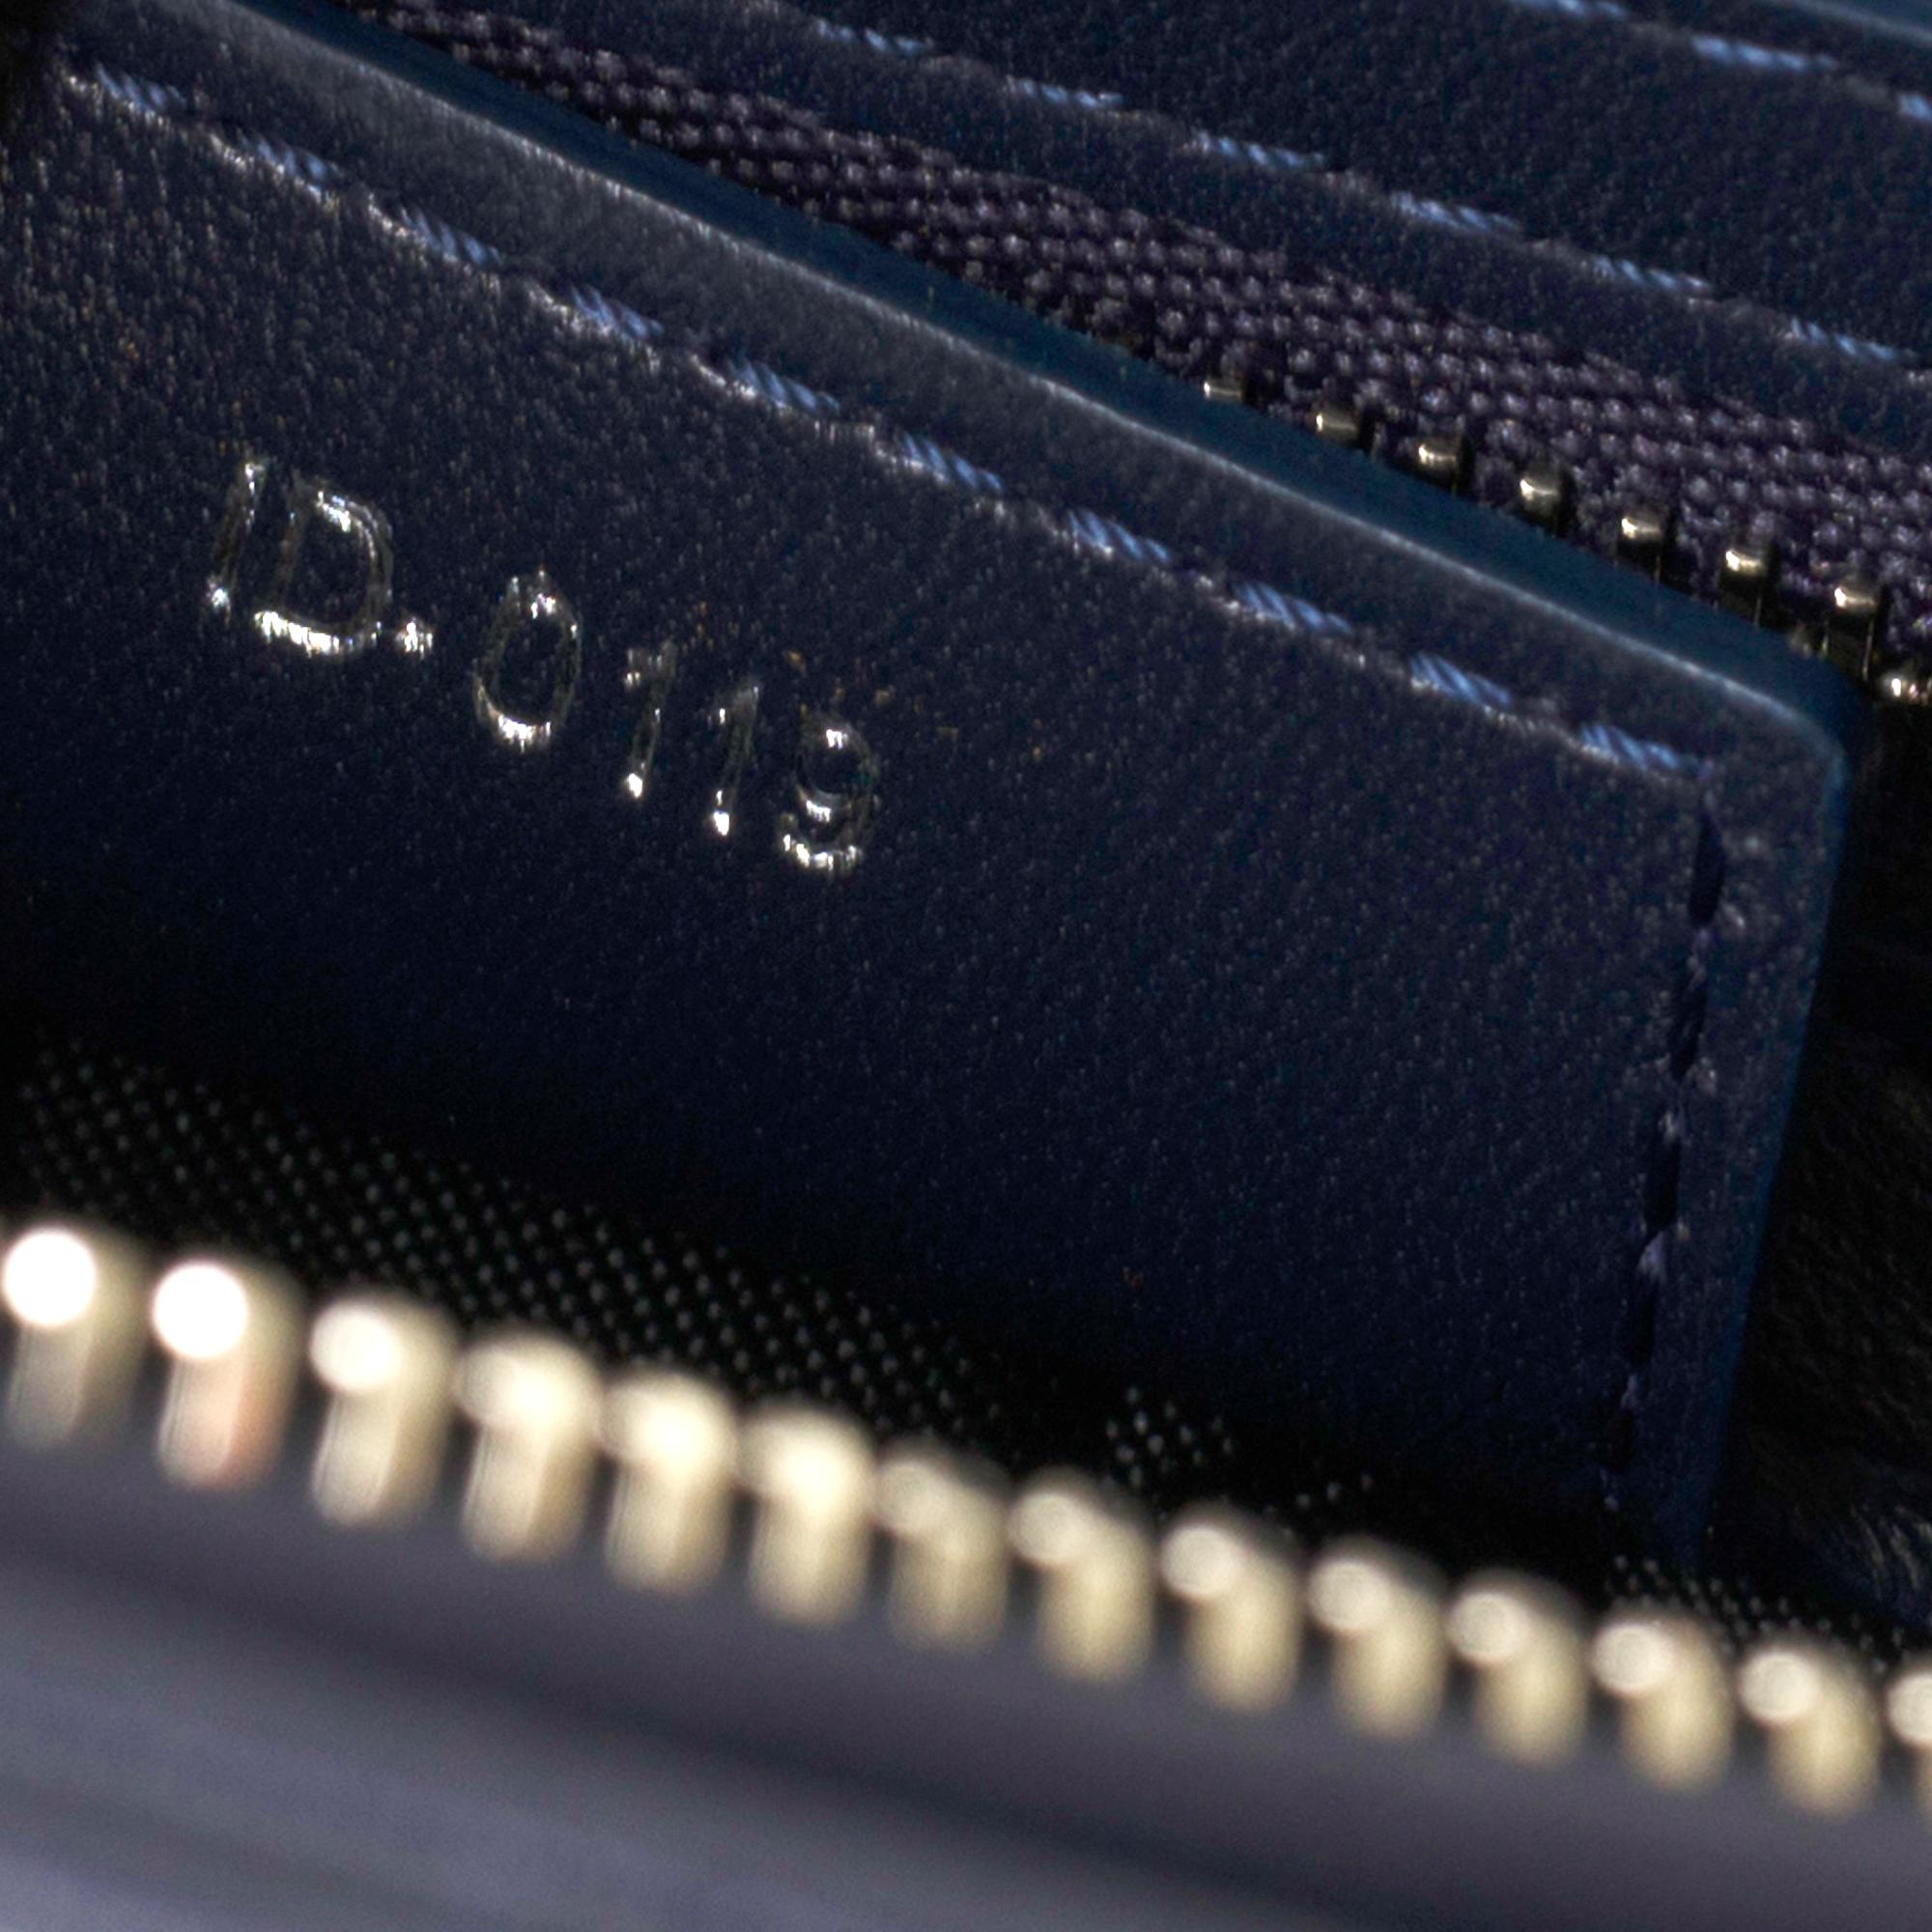  Christian Dior Lady Dior Medium size handbag in blue navy cannage leather, PHW 1